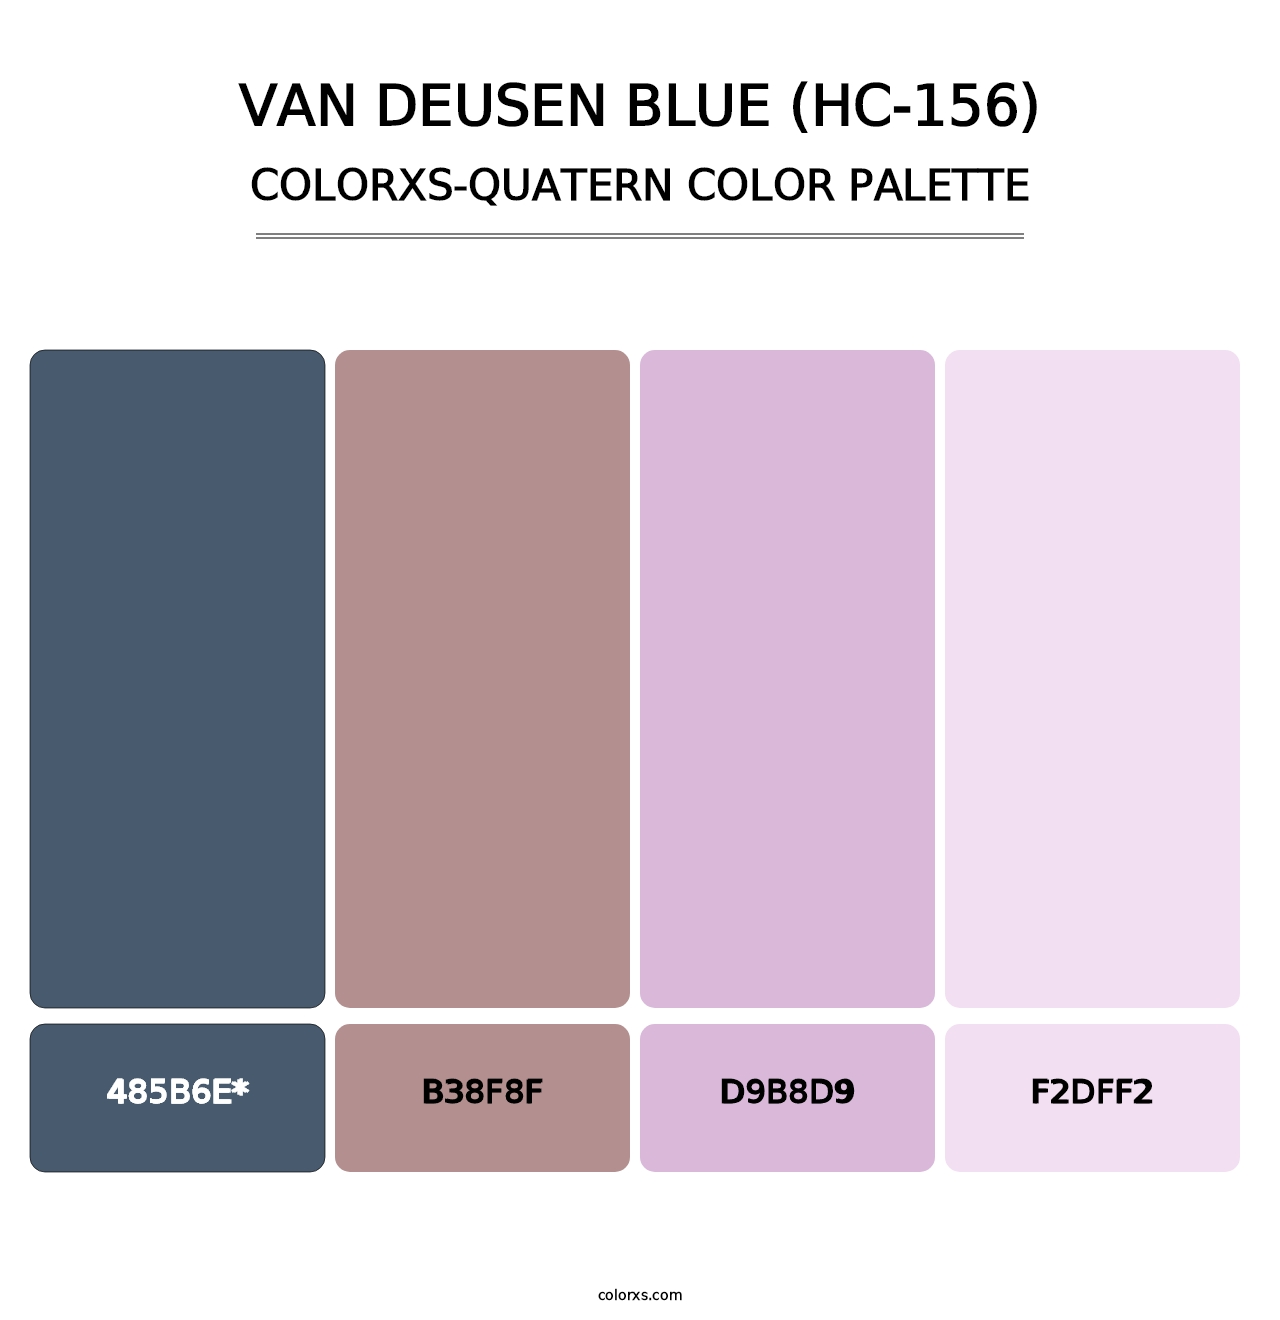 Van Deusen Blue (HC-156) - Colorxs Quatern Palette